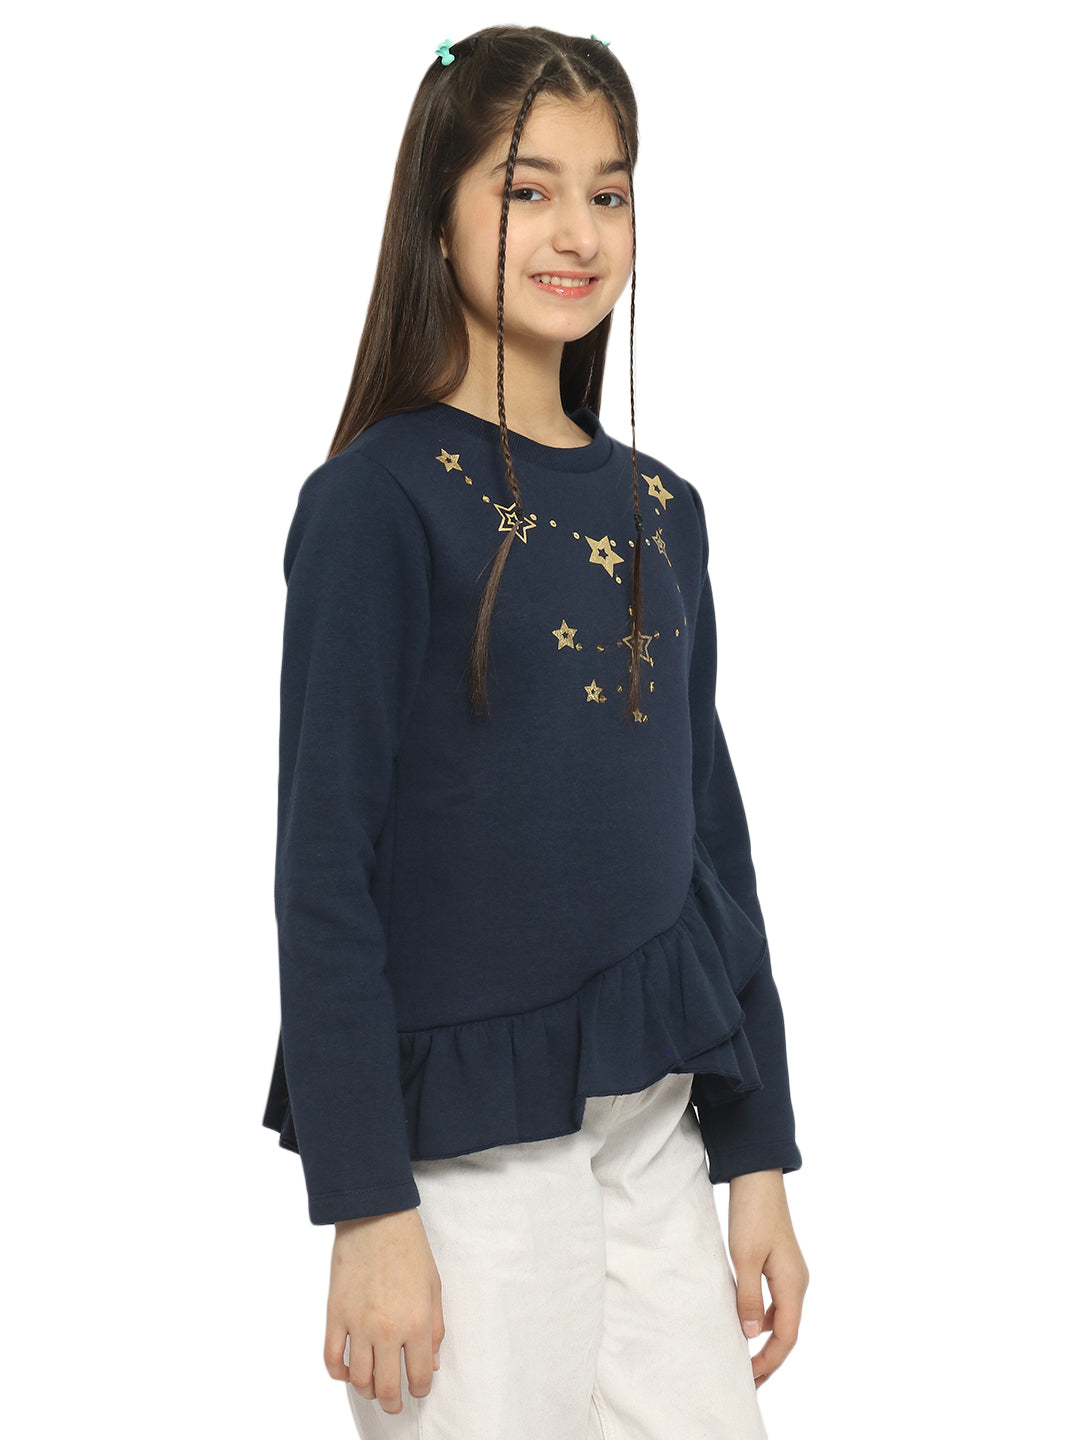 Natilene Girls Navy Blue Graphic Printed Sweatshirt